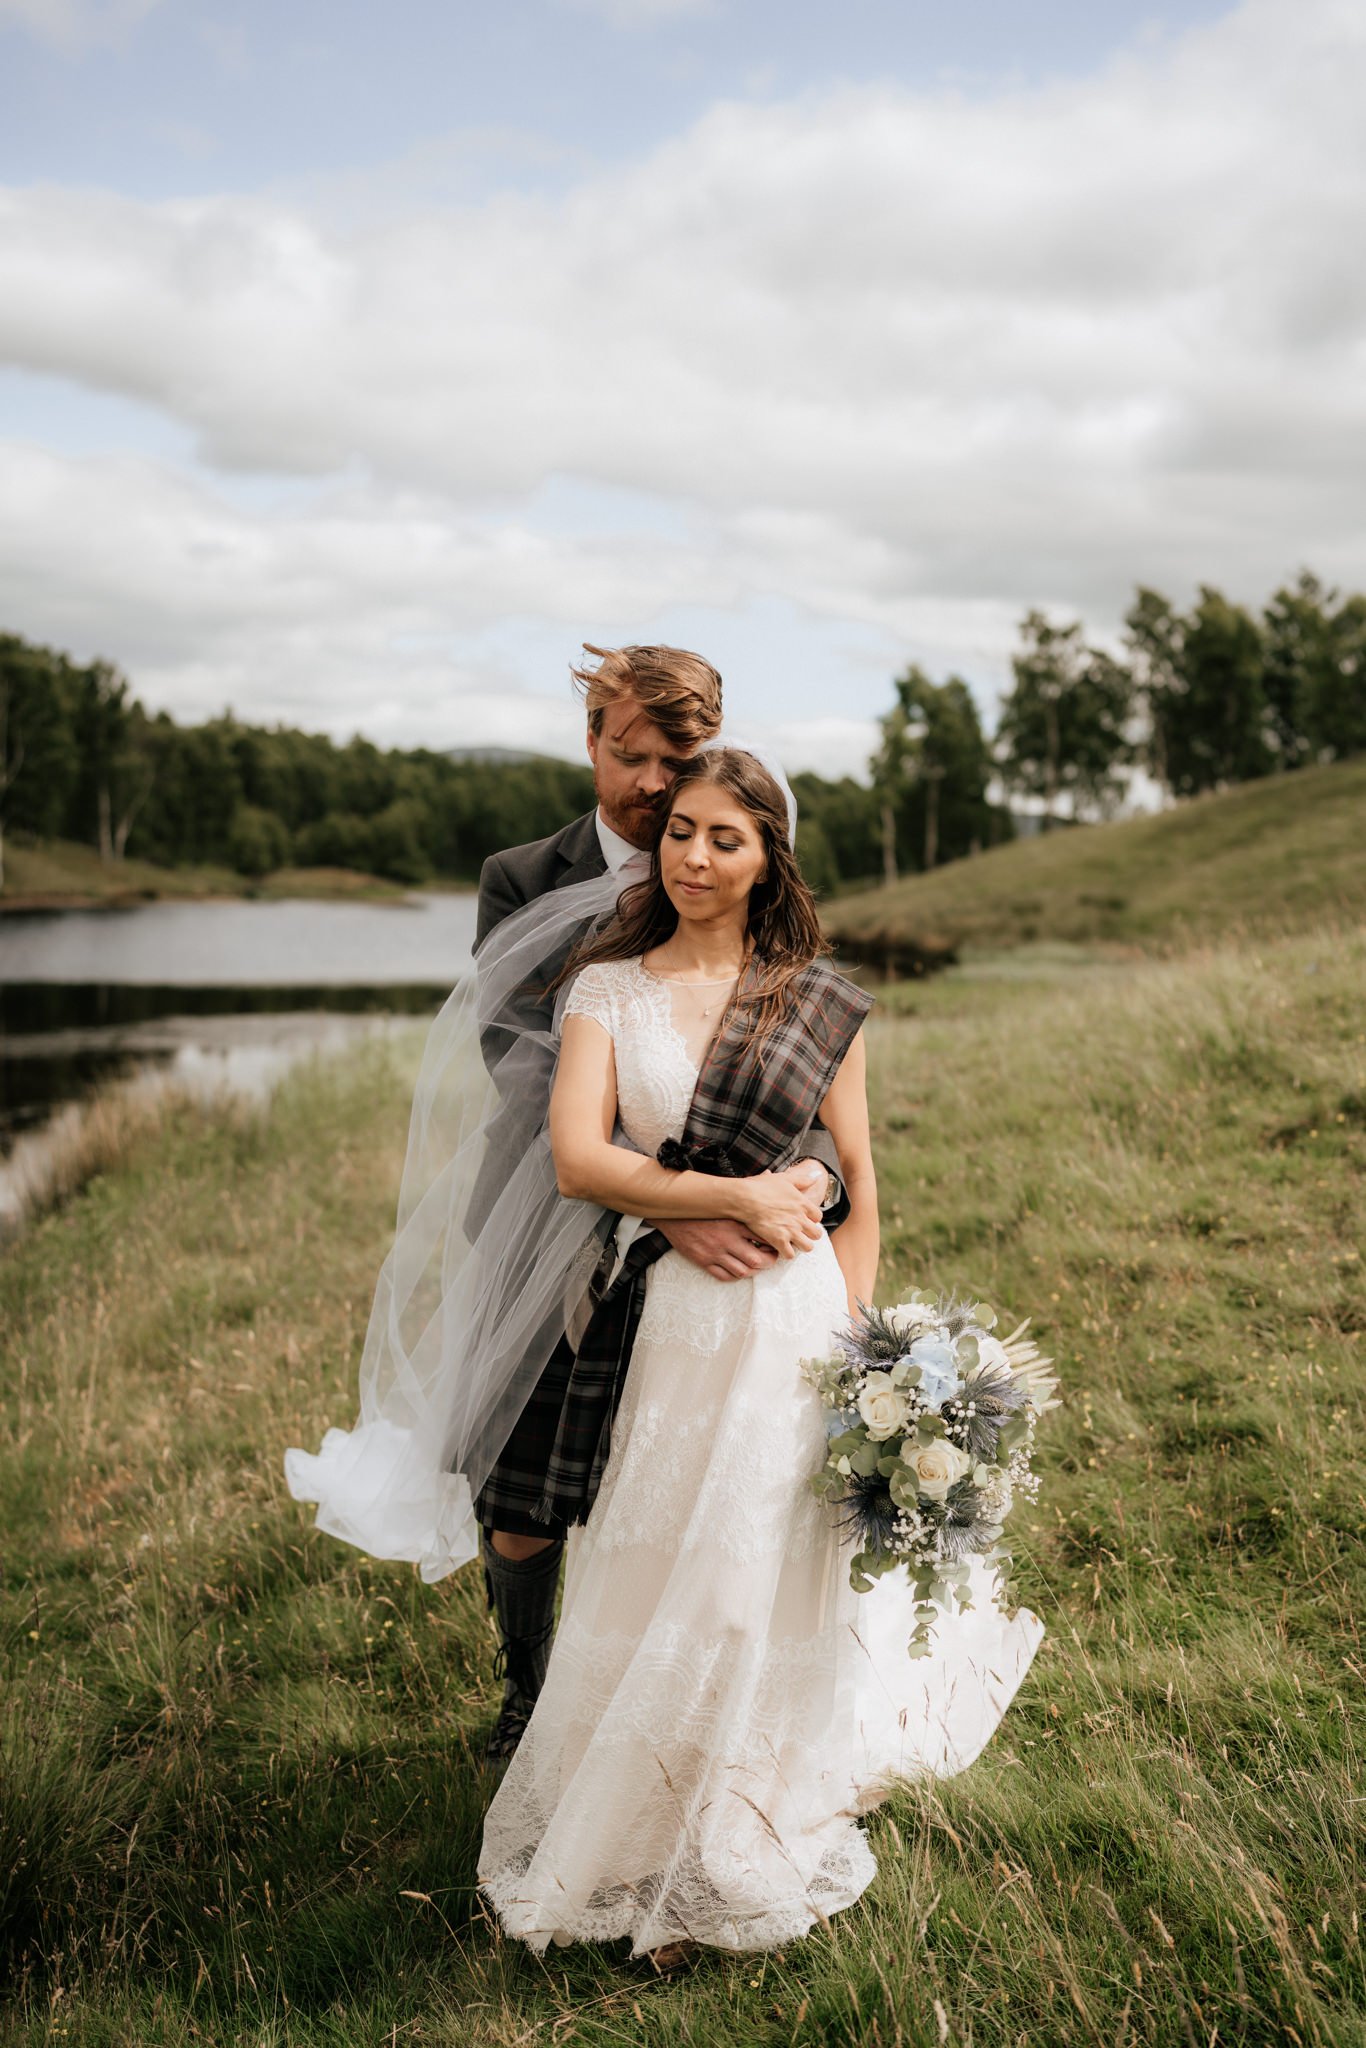 Glen Clova Hotel wedding photography | Aberdeenshire wedding photographer and videographer-47.jpg